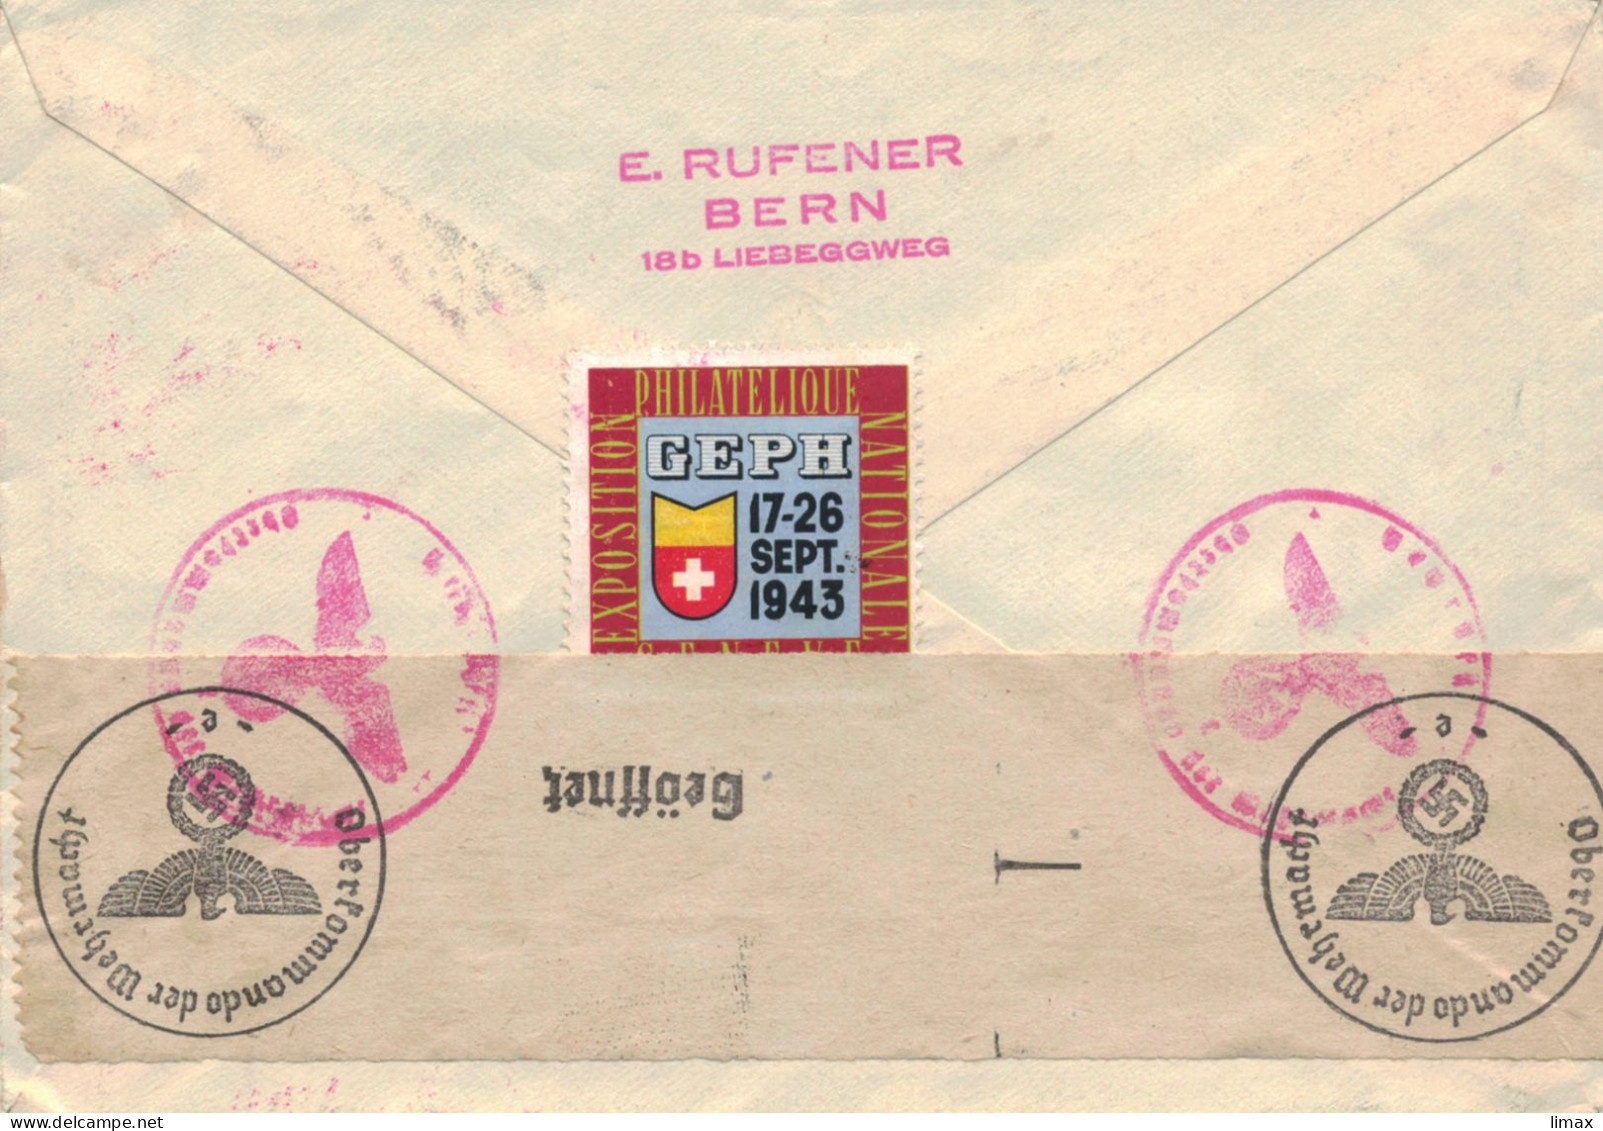 Rufener Zürich 1943 Reko > Schiedam - Zensur OKW - 100 Jahre Schweizer Postmarken - Lettres & Documents